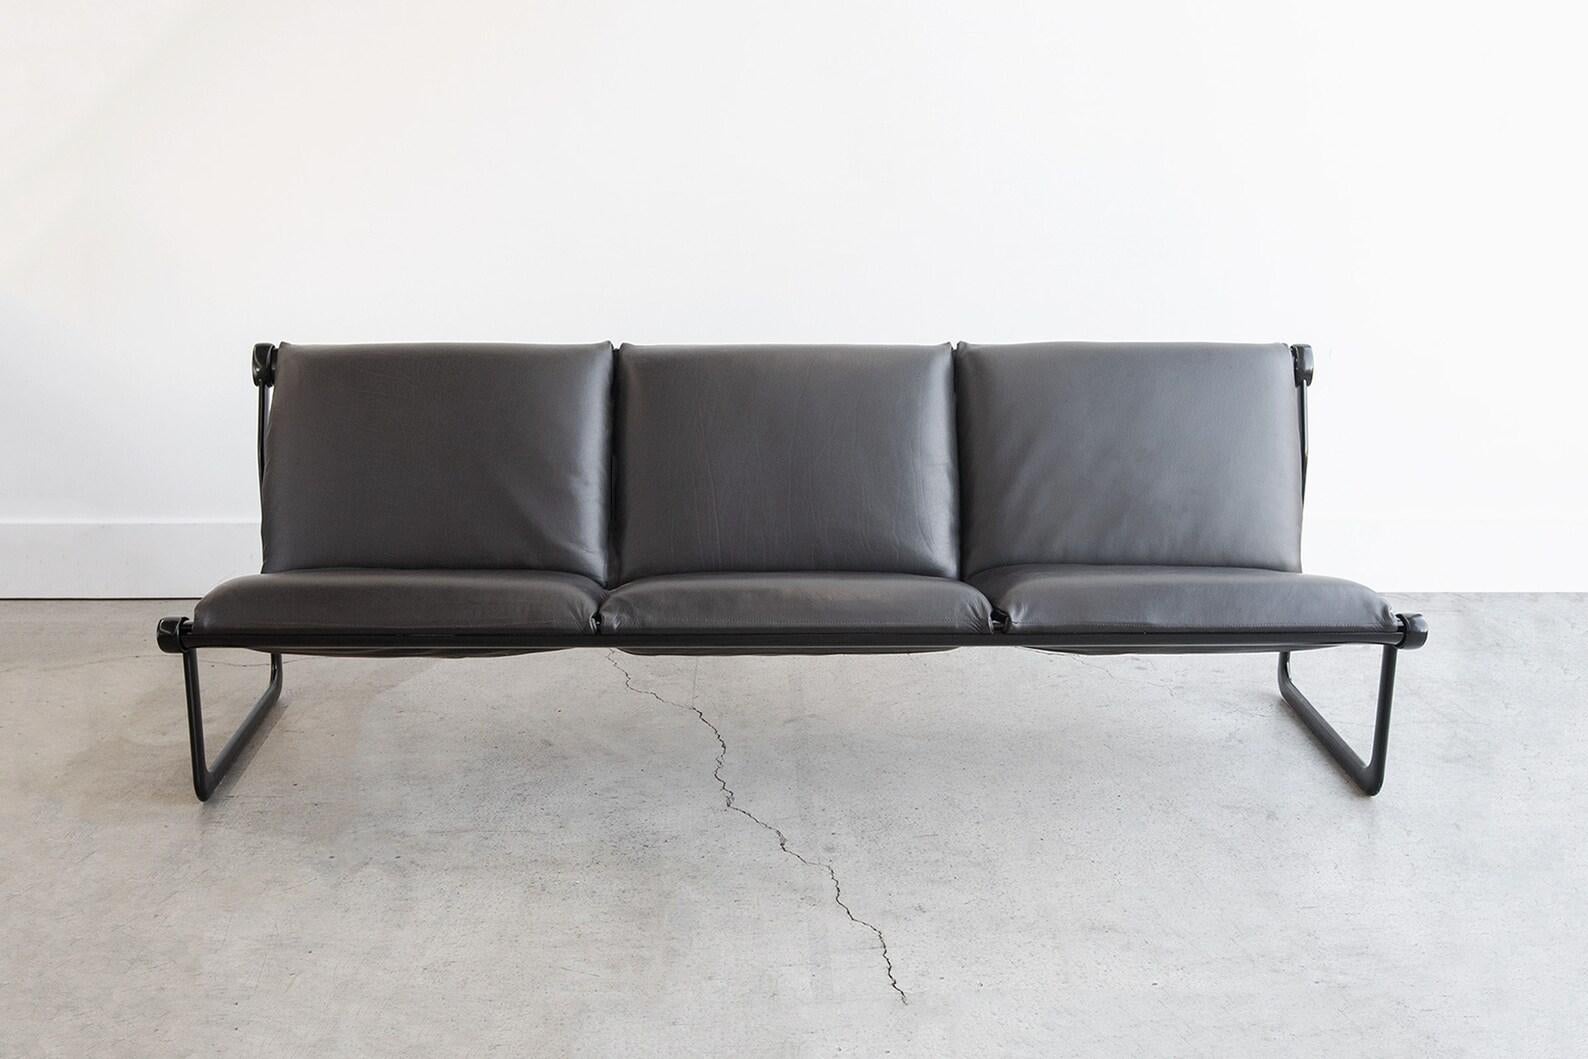 Sehr seltenes Aluminium-Sling-Sofa mit 3 Sitzen, entworfen von Bruce Hannah und Andrew Morrison für Knoll. Dieses Designteam arbeitete in den 1970er Jahren bei Knoll zusammen und gewann zahlreiche Designpreise! Das superbequeme Sling-Design eignet